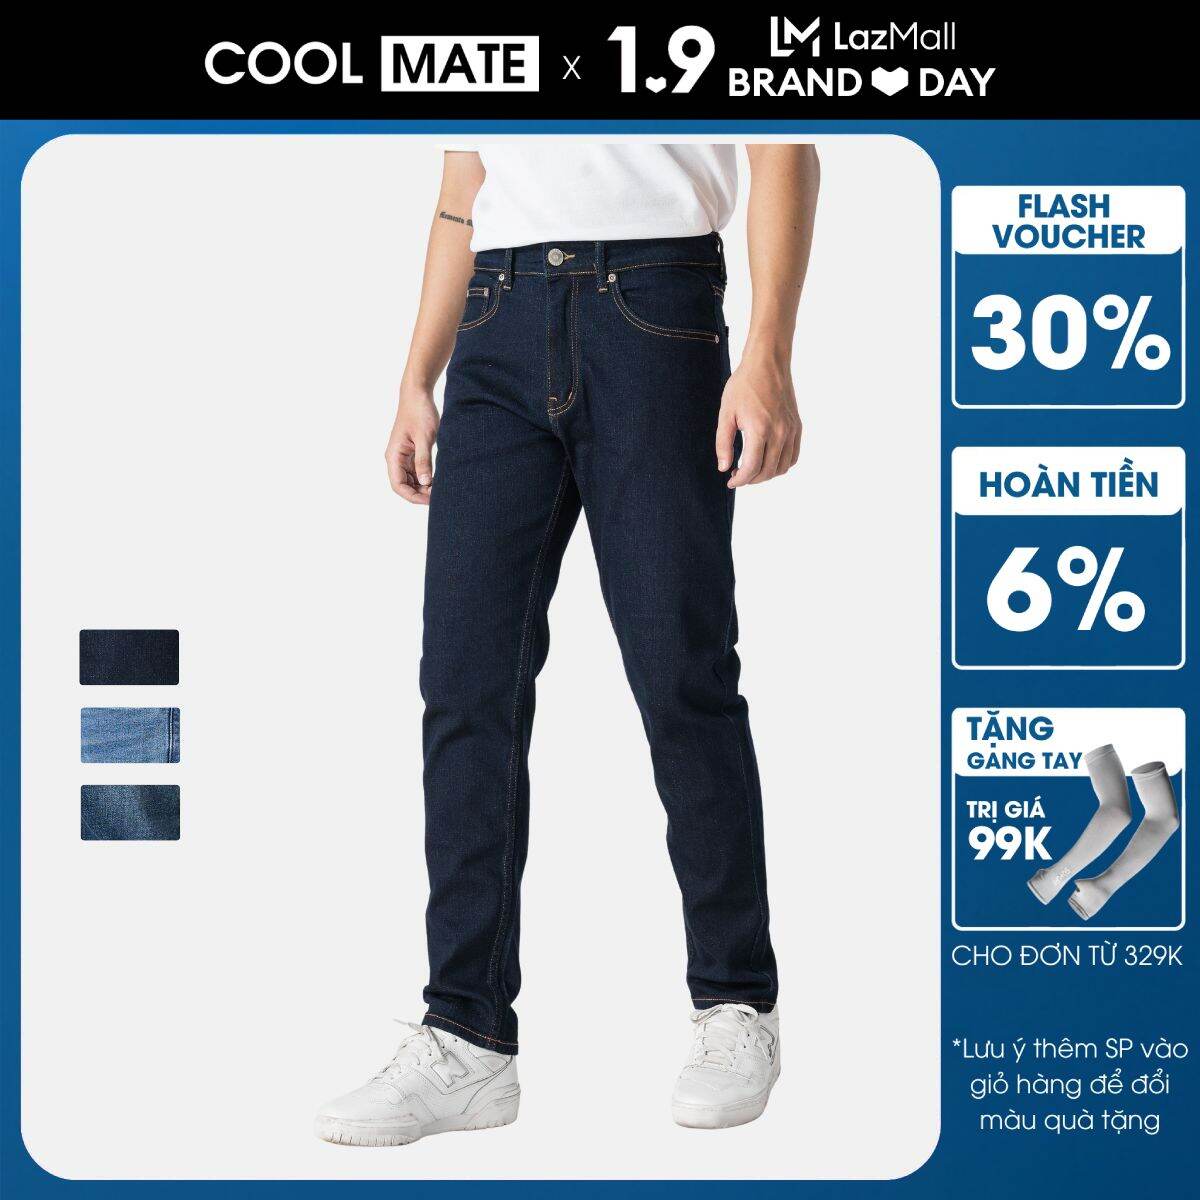 CHỈ 1.9 TẶNG GĂNG TAY CHỐNG UV ĐƠN 329KQuần Jeans Dáng Slim Fit V2 -